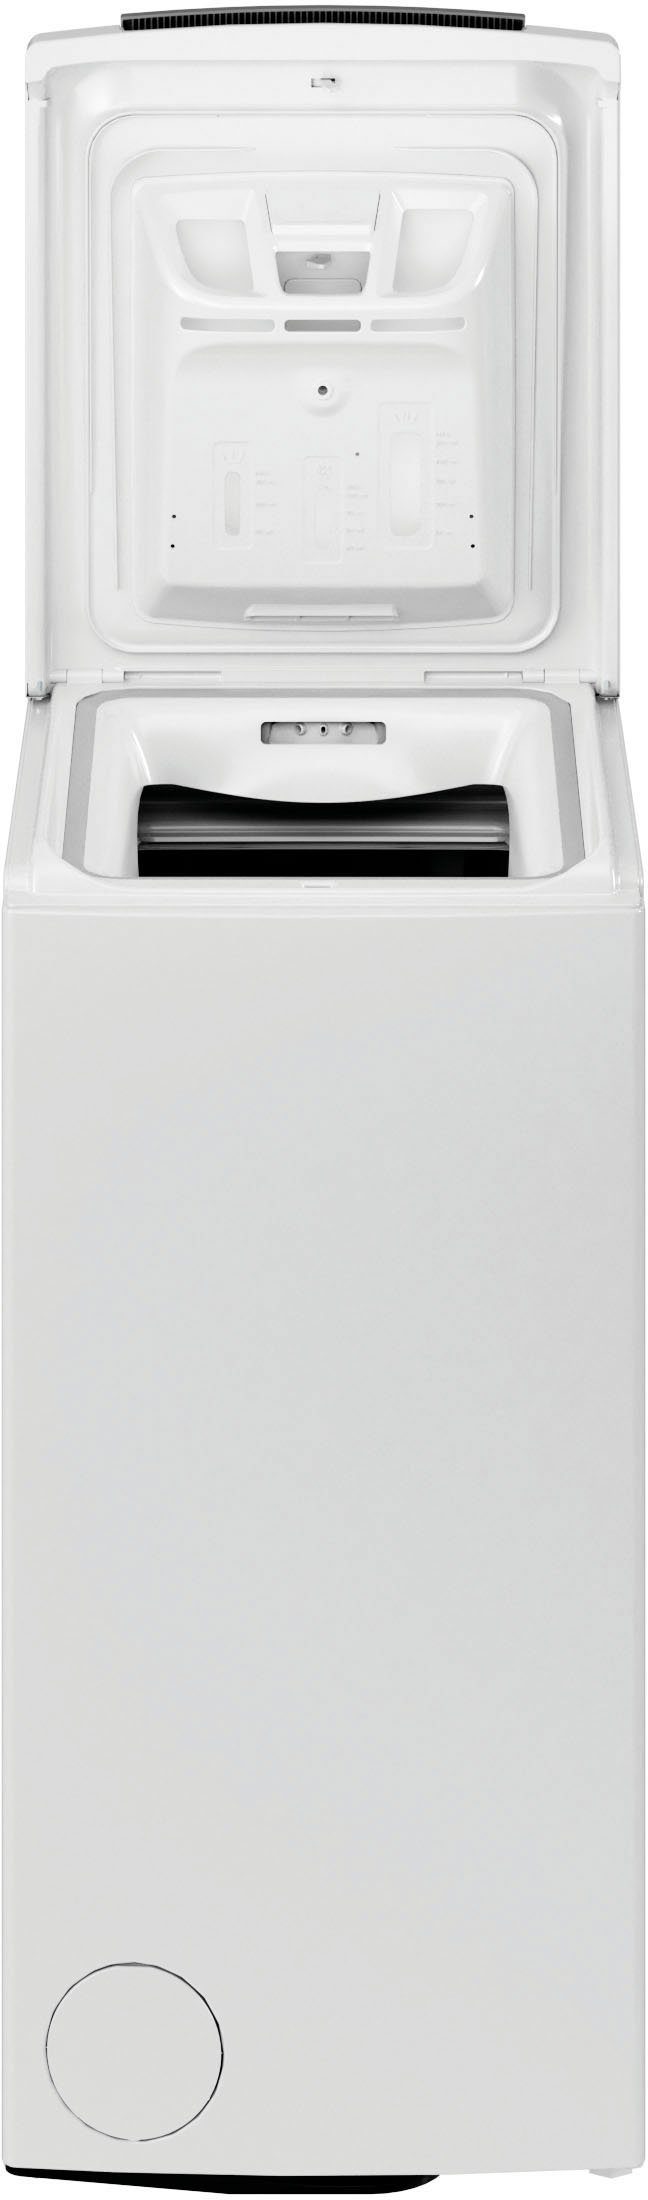 BAUKNECHT Waschmaschine Toplader 1200 Eco WMT 6ZB, 6 kg, U/min Pro